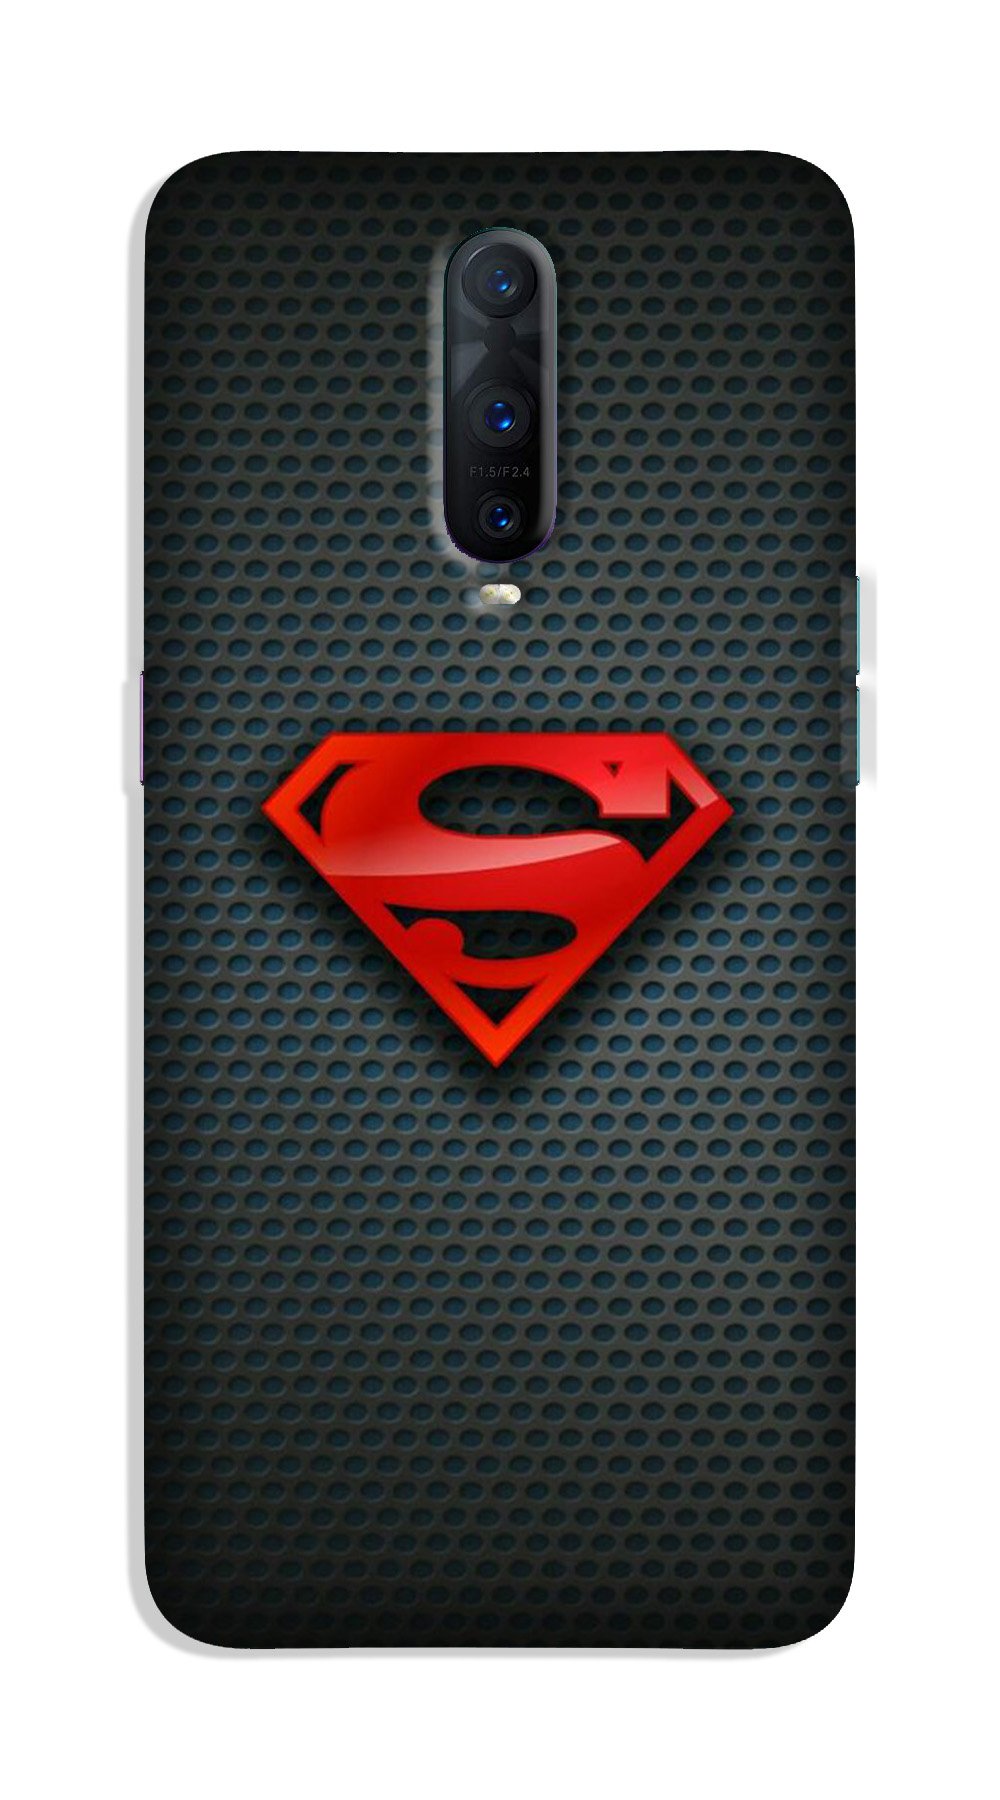 Superman Case for Oppo R17 Pro (Design No. 247)